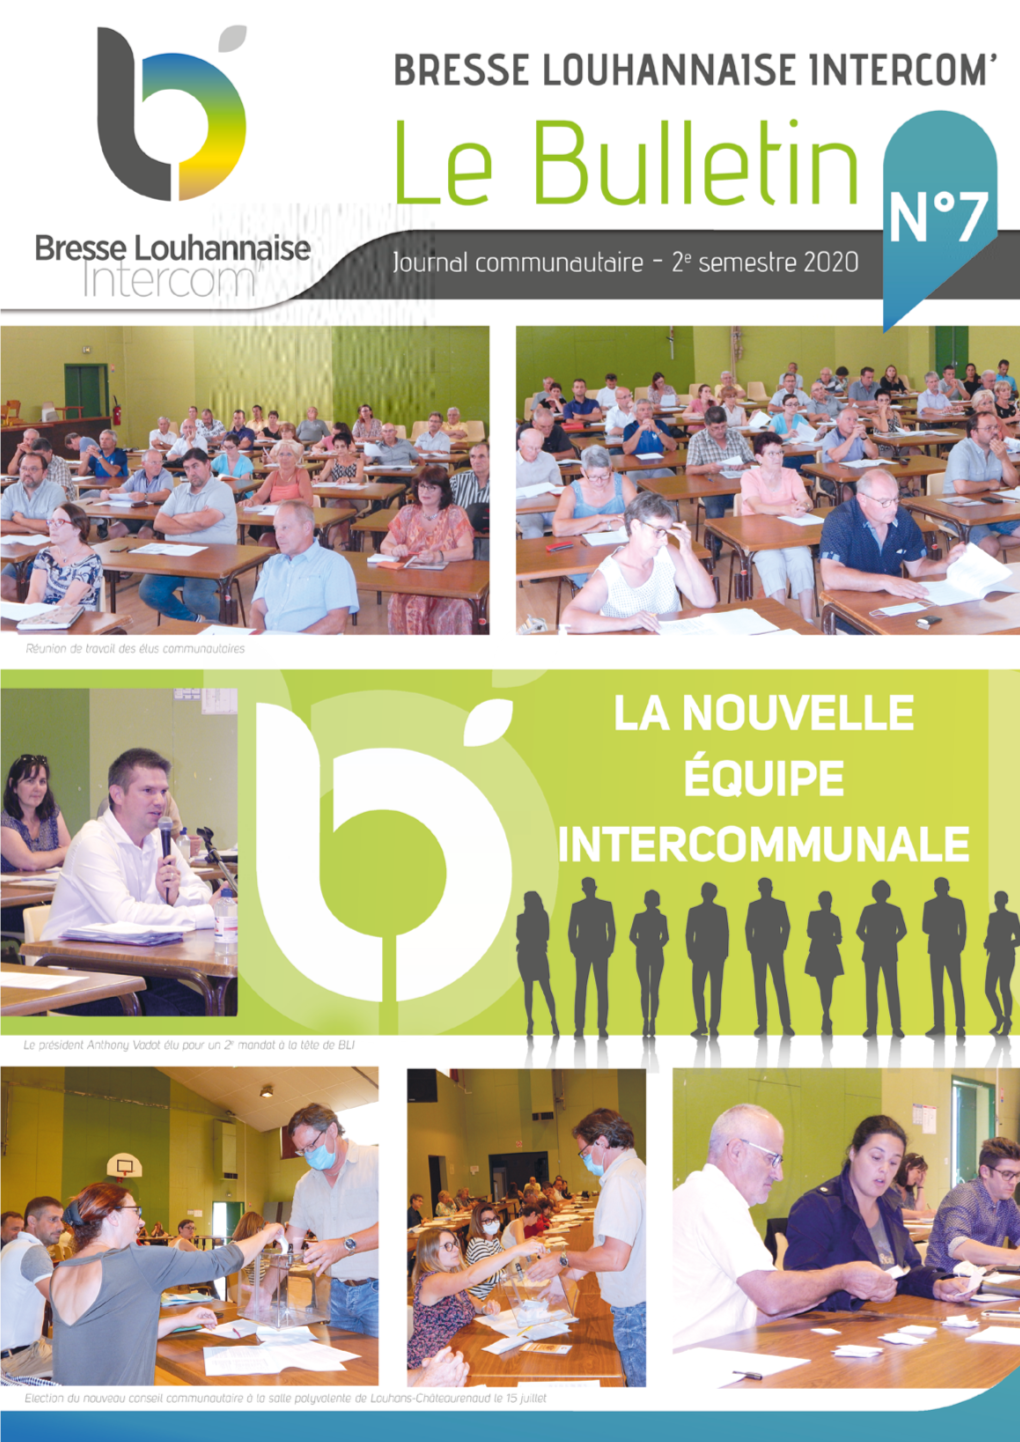 OPAH Bresse Louhannaise Intercom' 2020-2023, C'est Parti